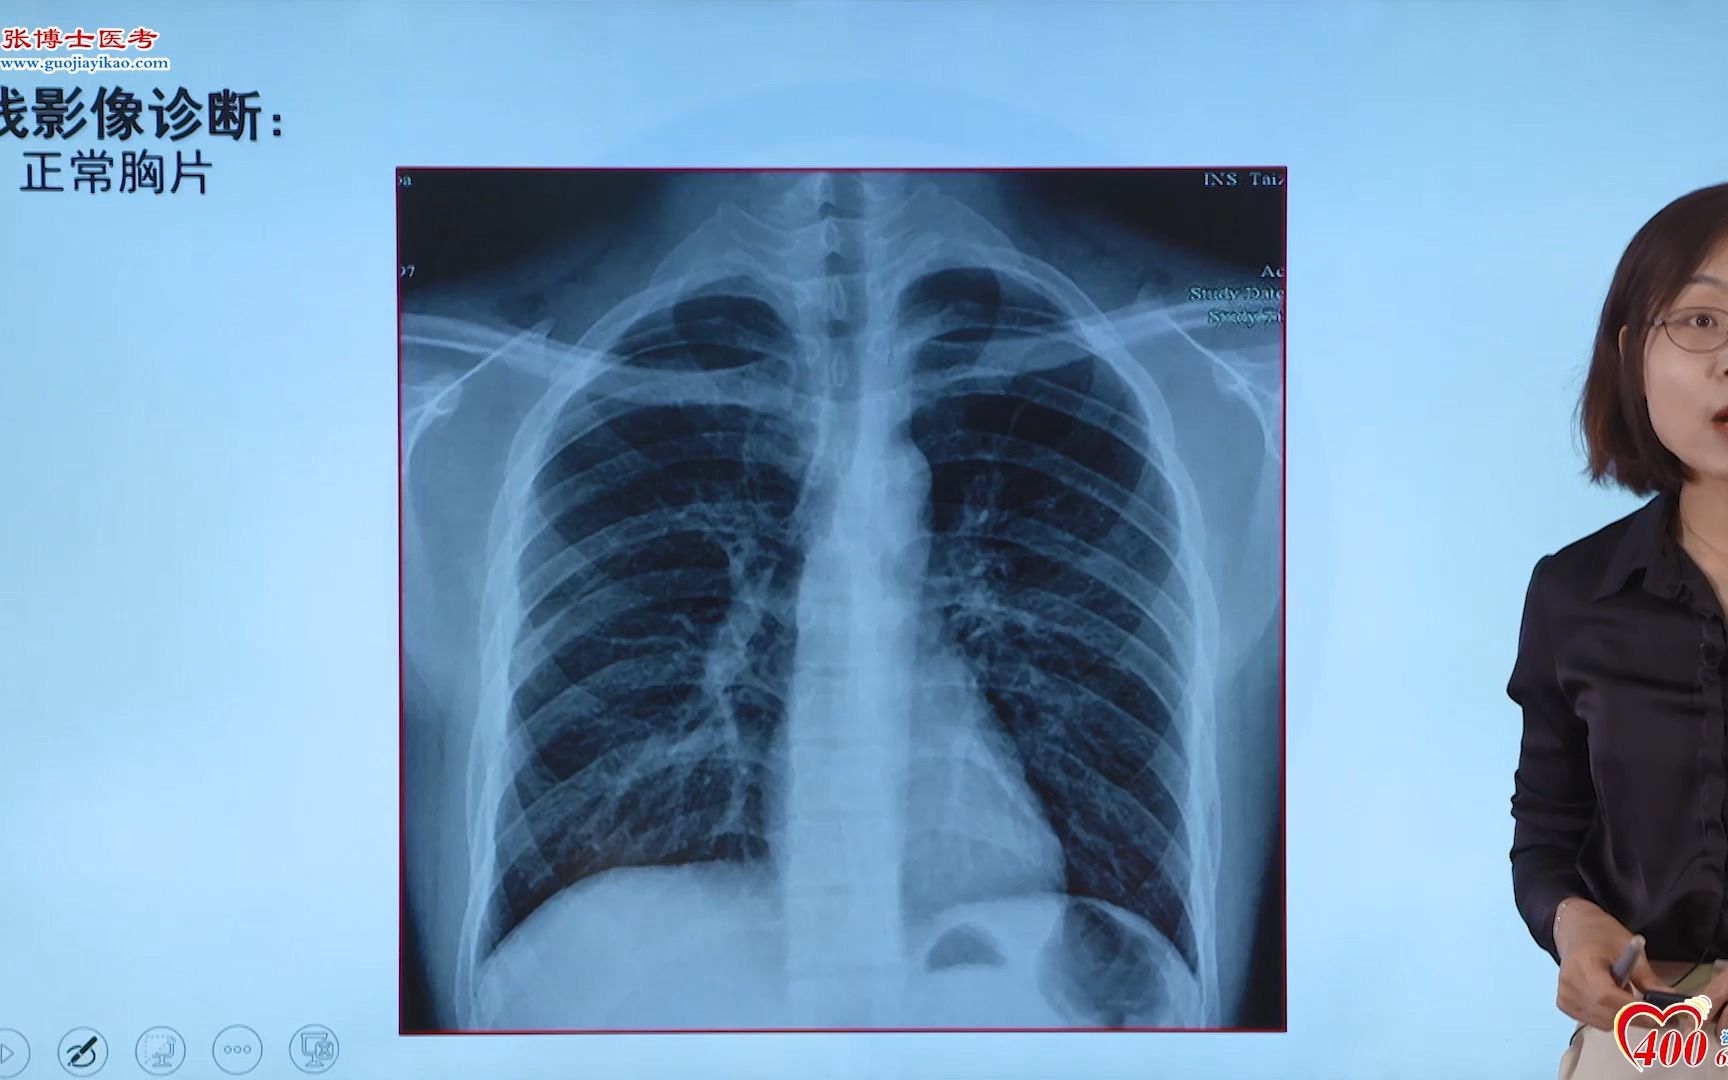 正常肺ct片子图片